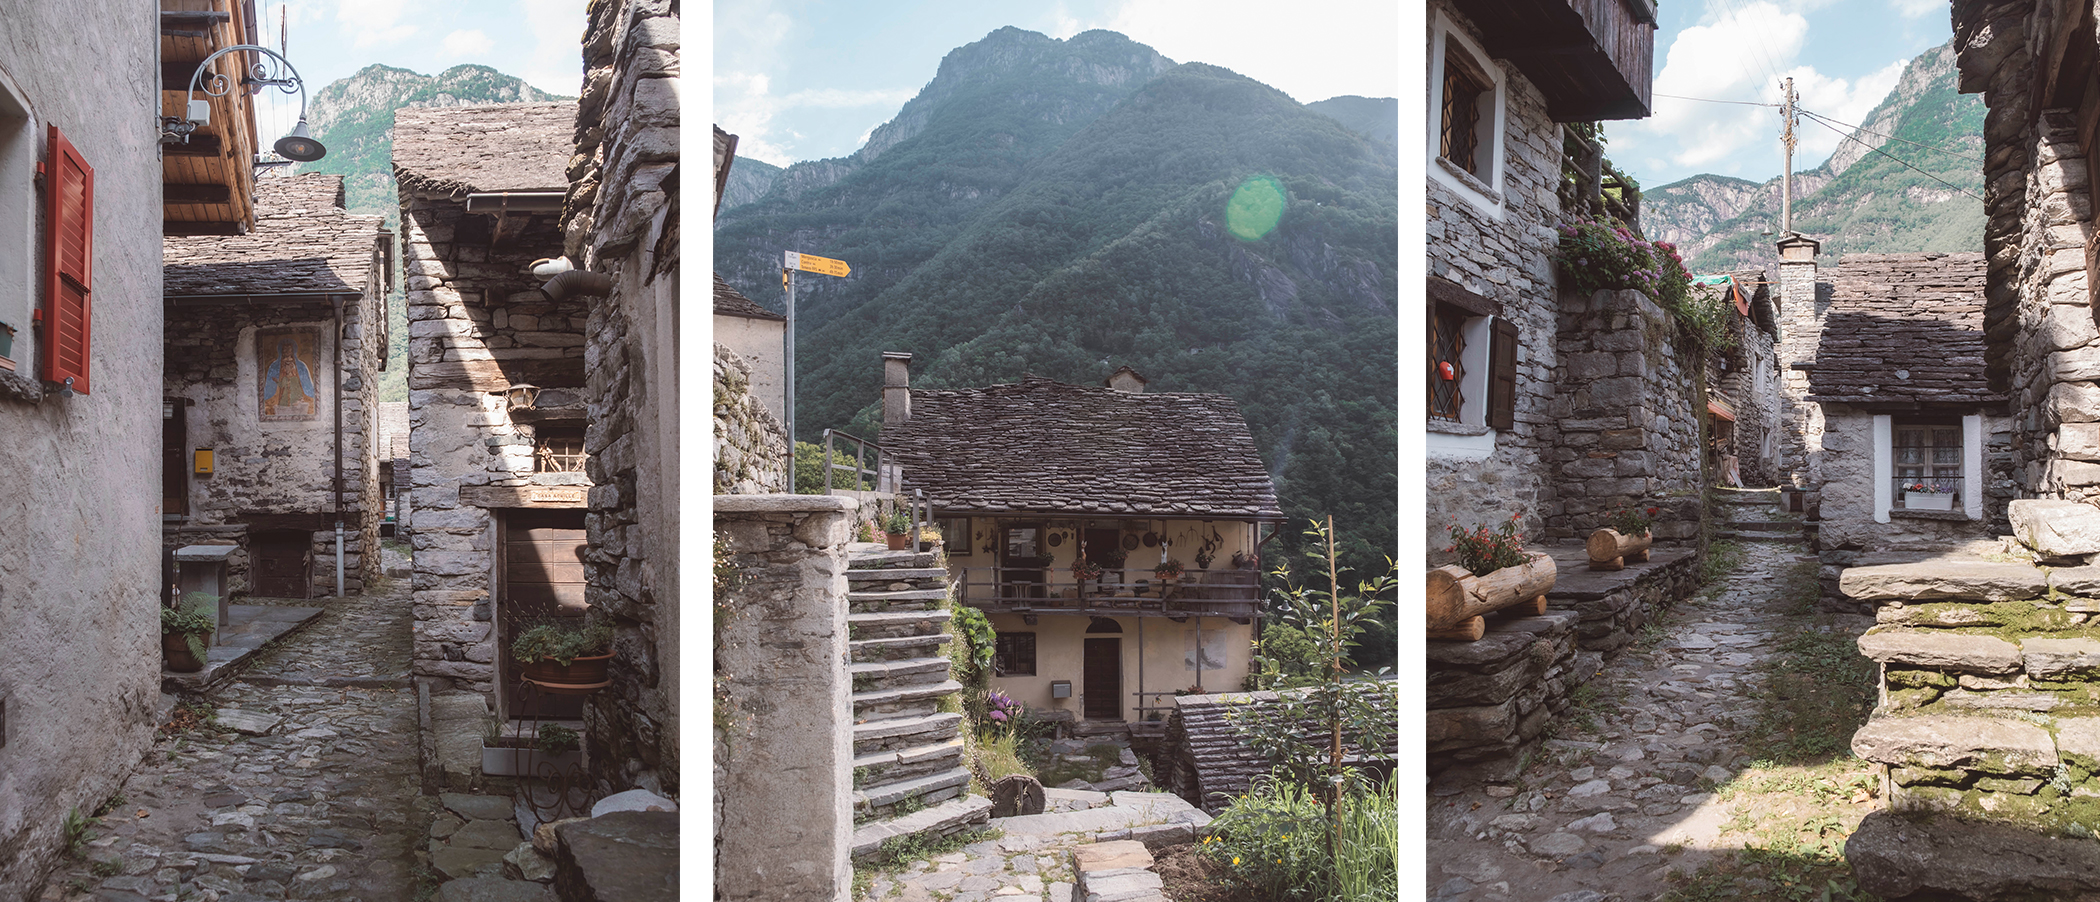 Les maisons biscornues en pierre de Corippo font tout le charme du village